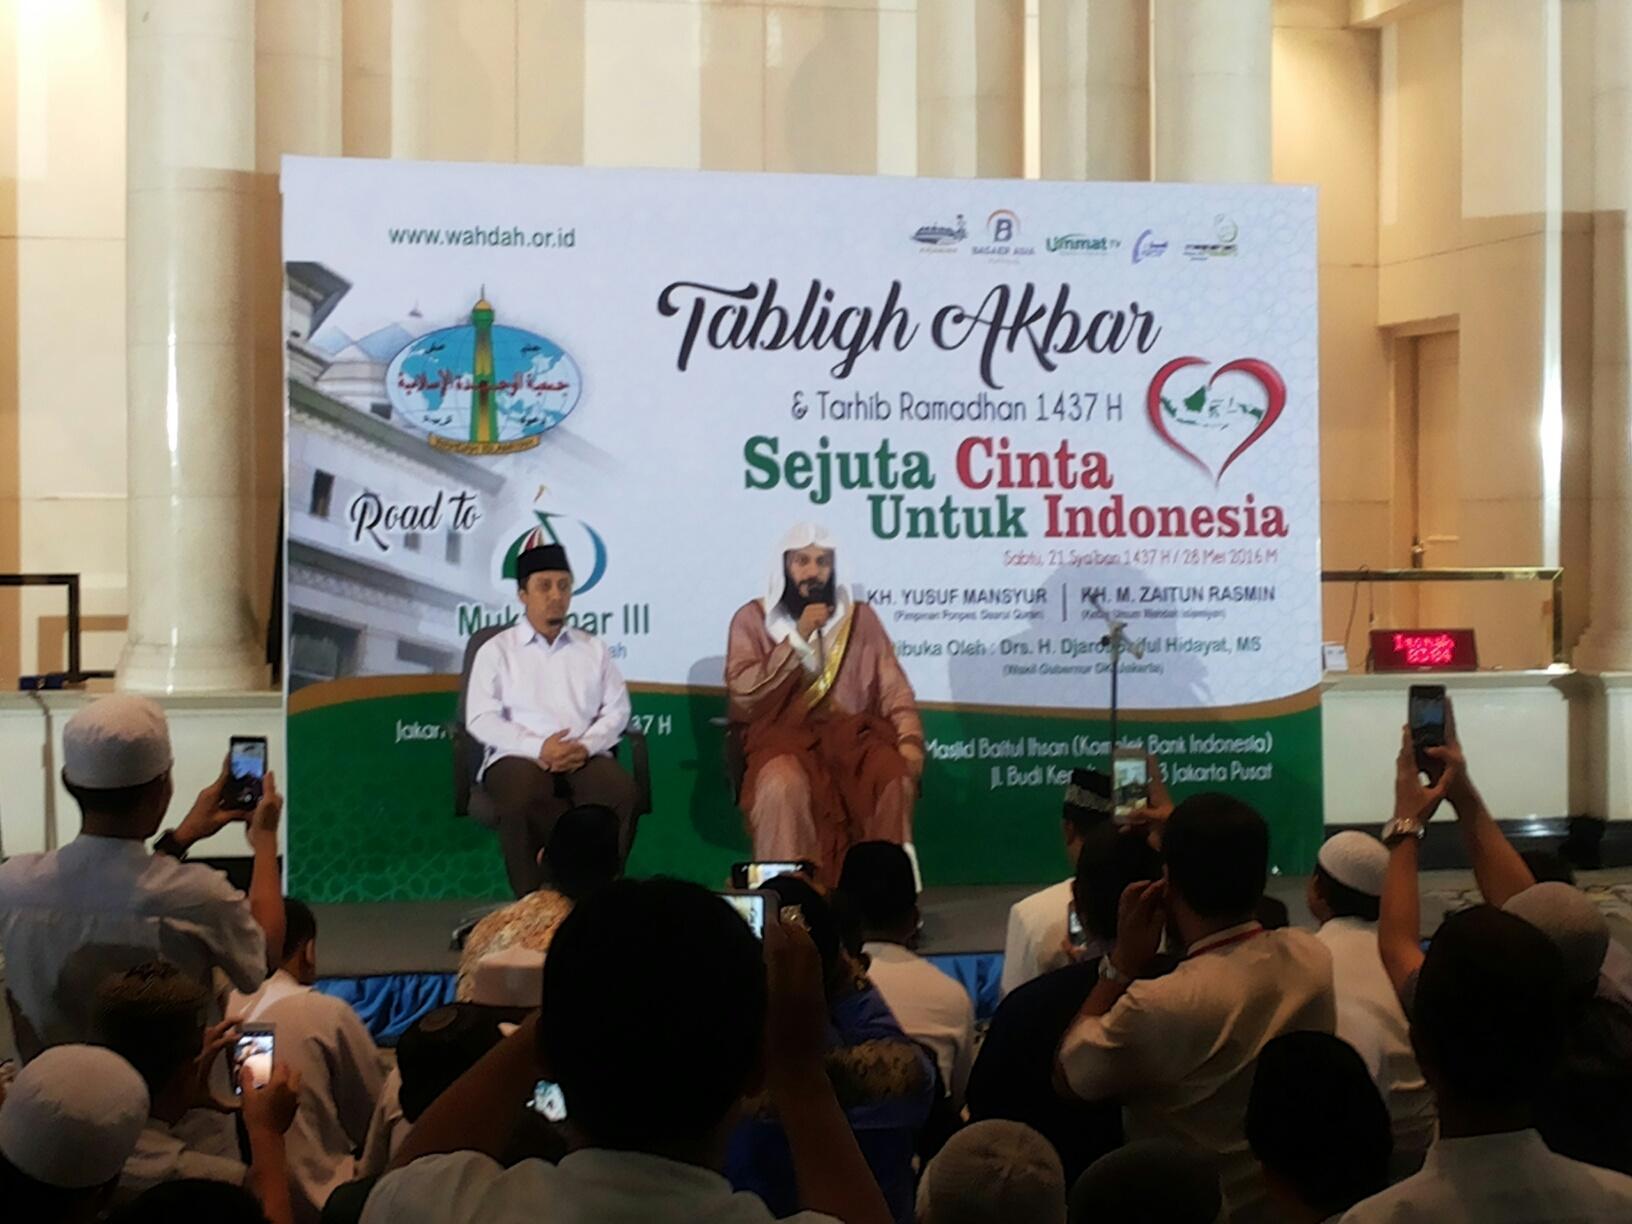 Istimewa, Tabligh Akbar dan Tarhib Ramadhan Wahdah Islamiyah Dihadiri Imam Masjidil Haram